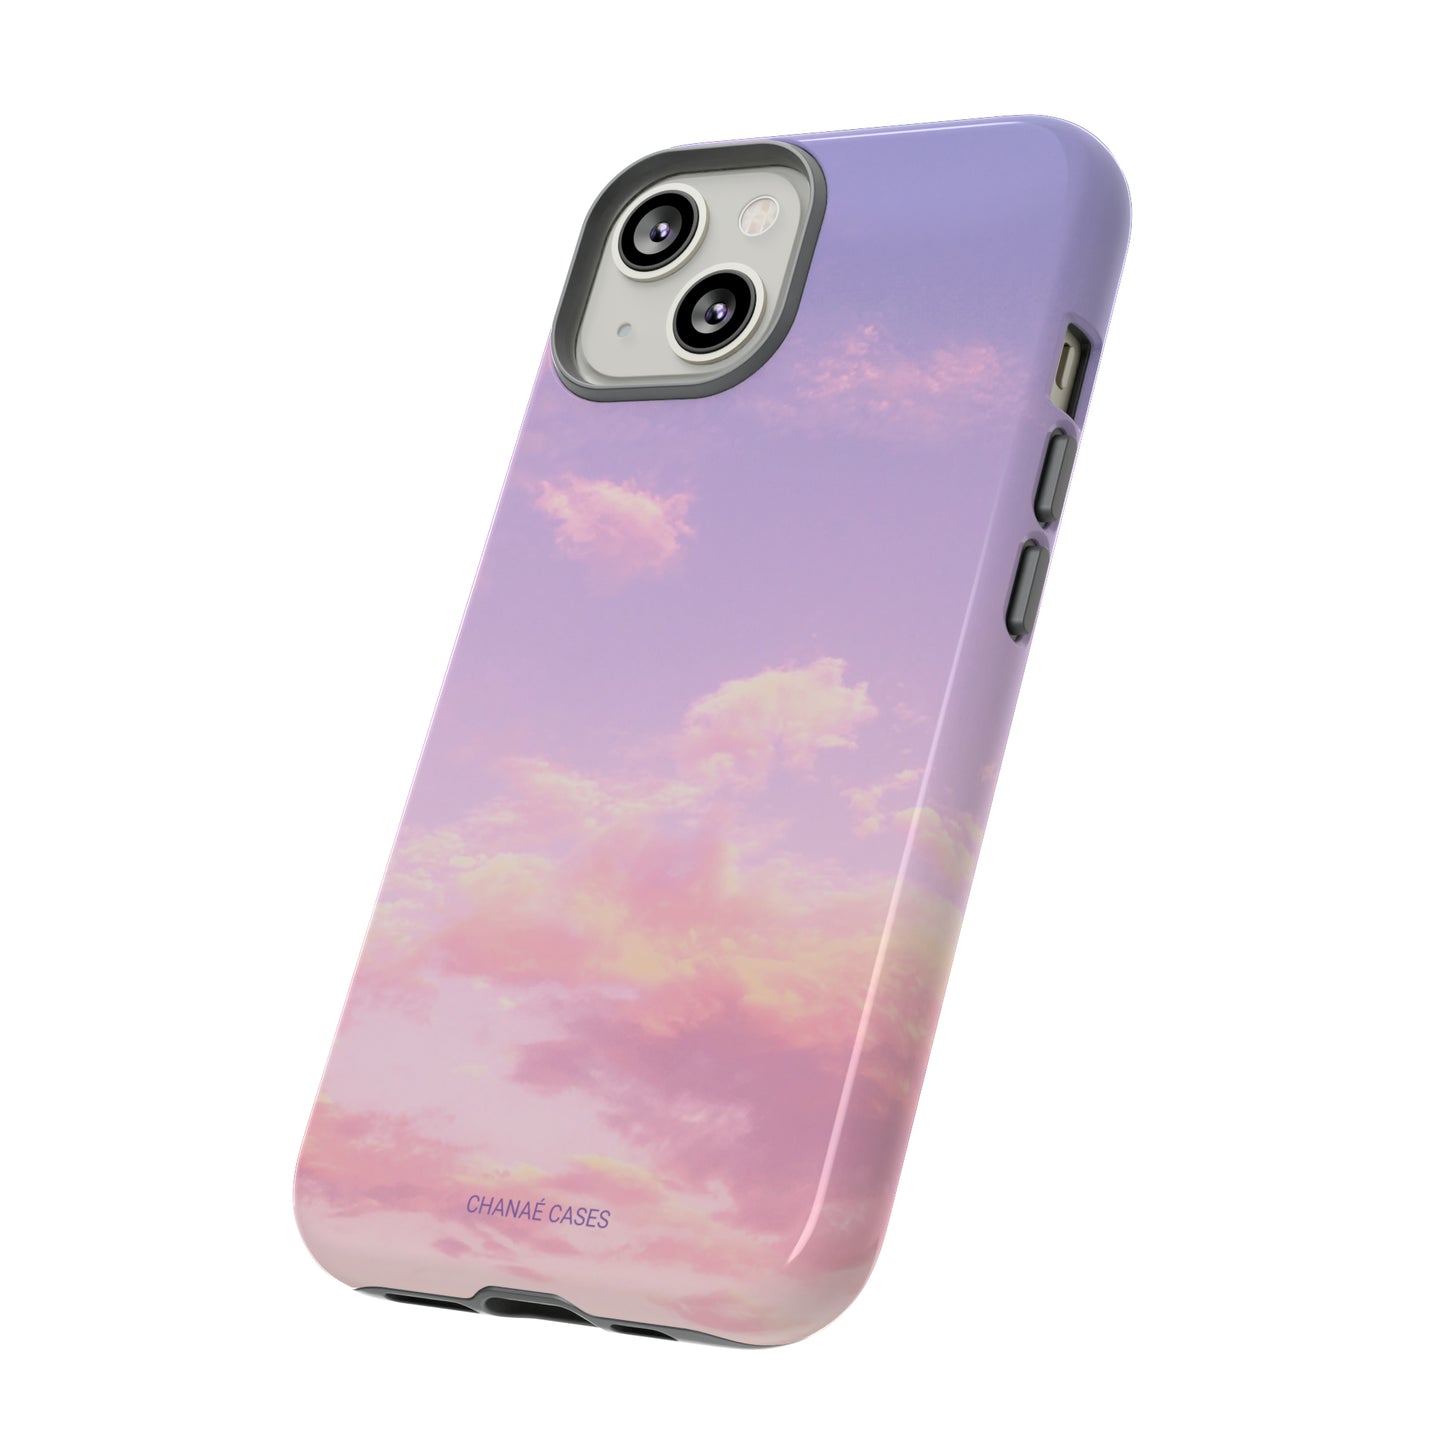 Barbados Sunset iPhone "Tough" Case (Pink)